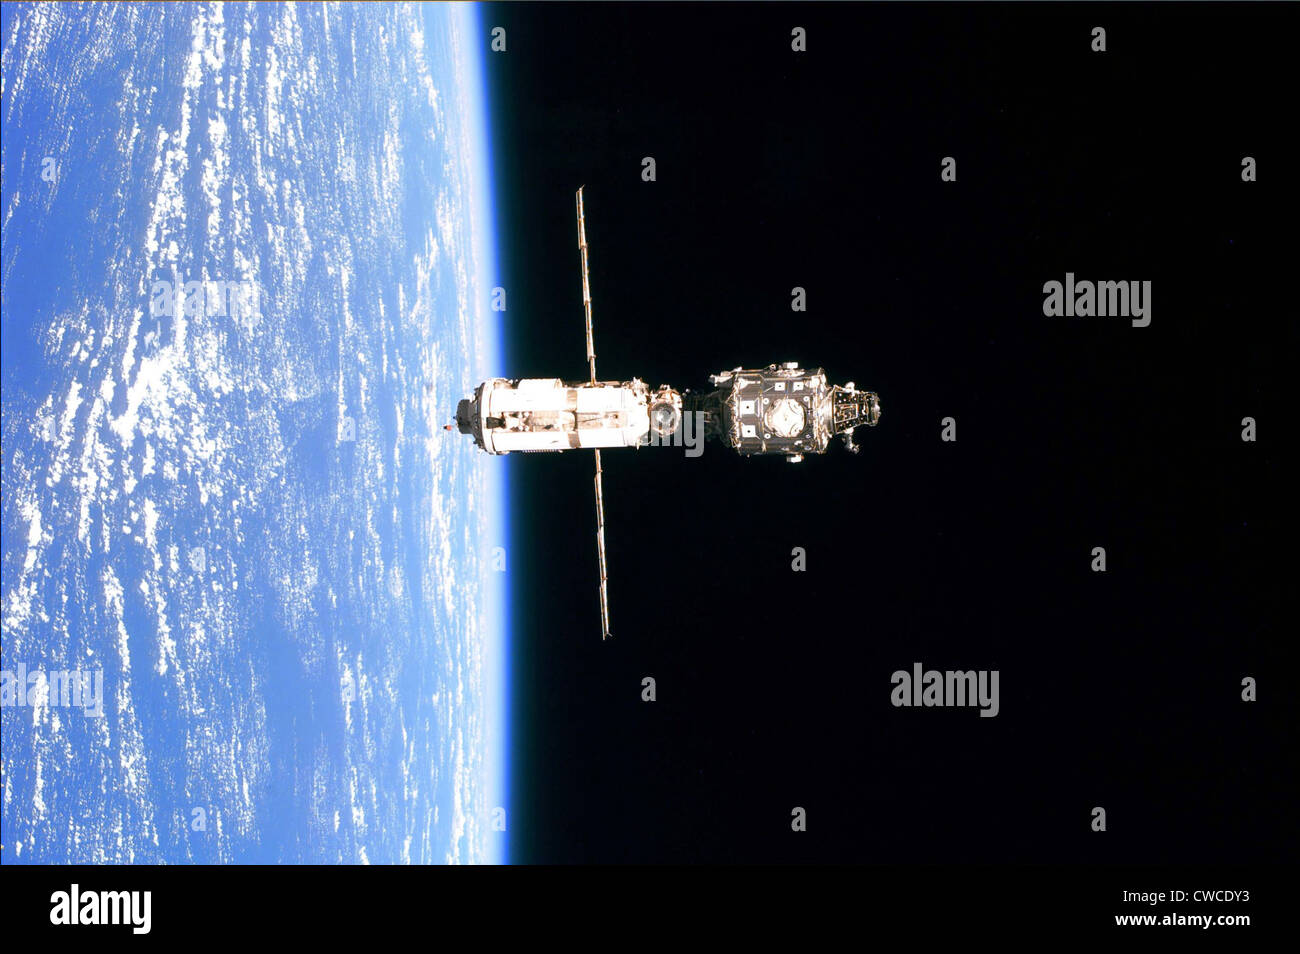 La Stazione Spaziale Internazionale nel 1999. Foto scattata dalla navetta spaziale Discovery il 3 giugno 1999. Foto Stock